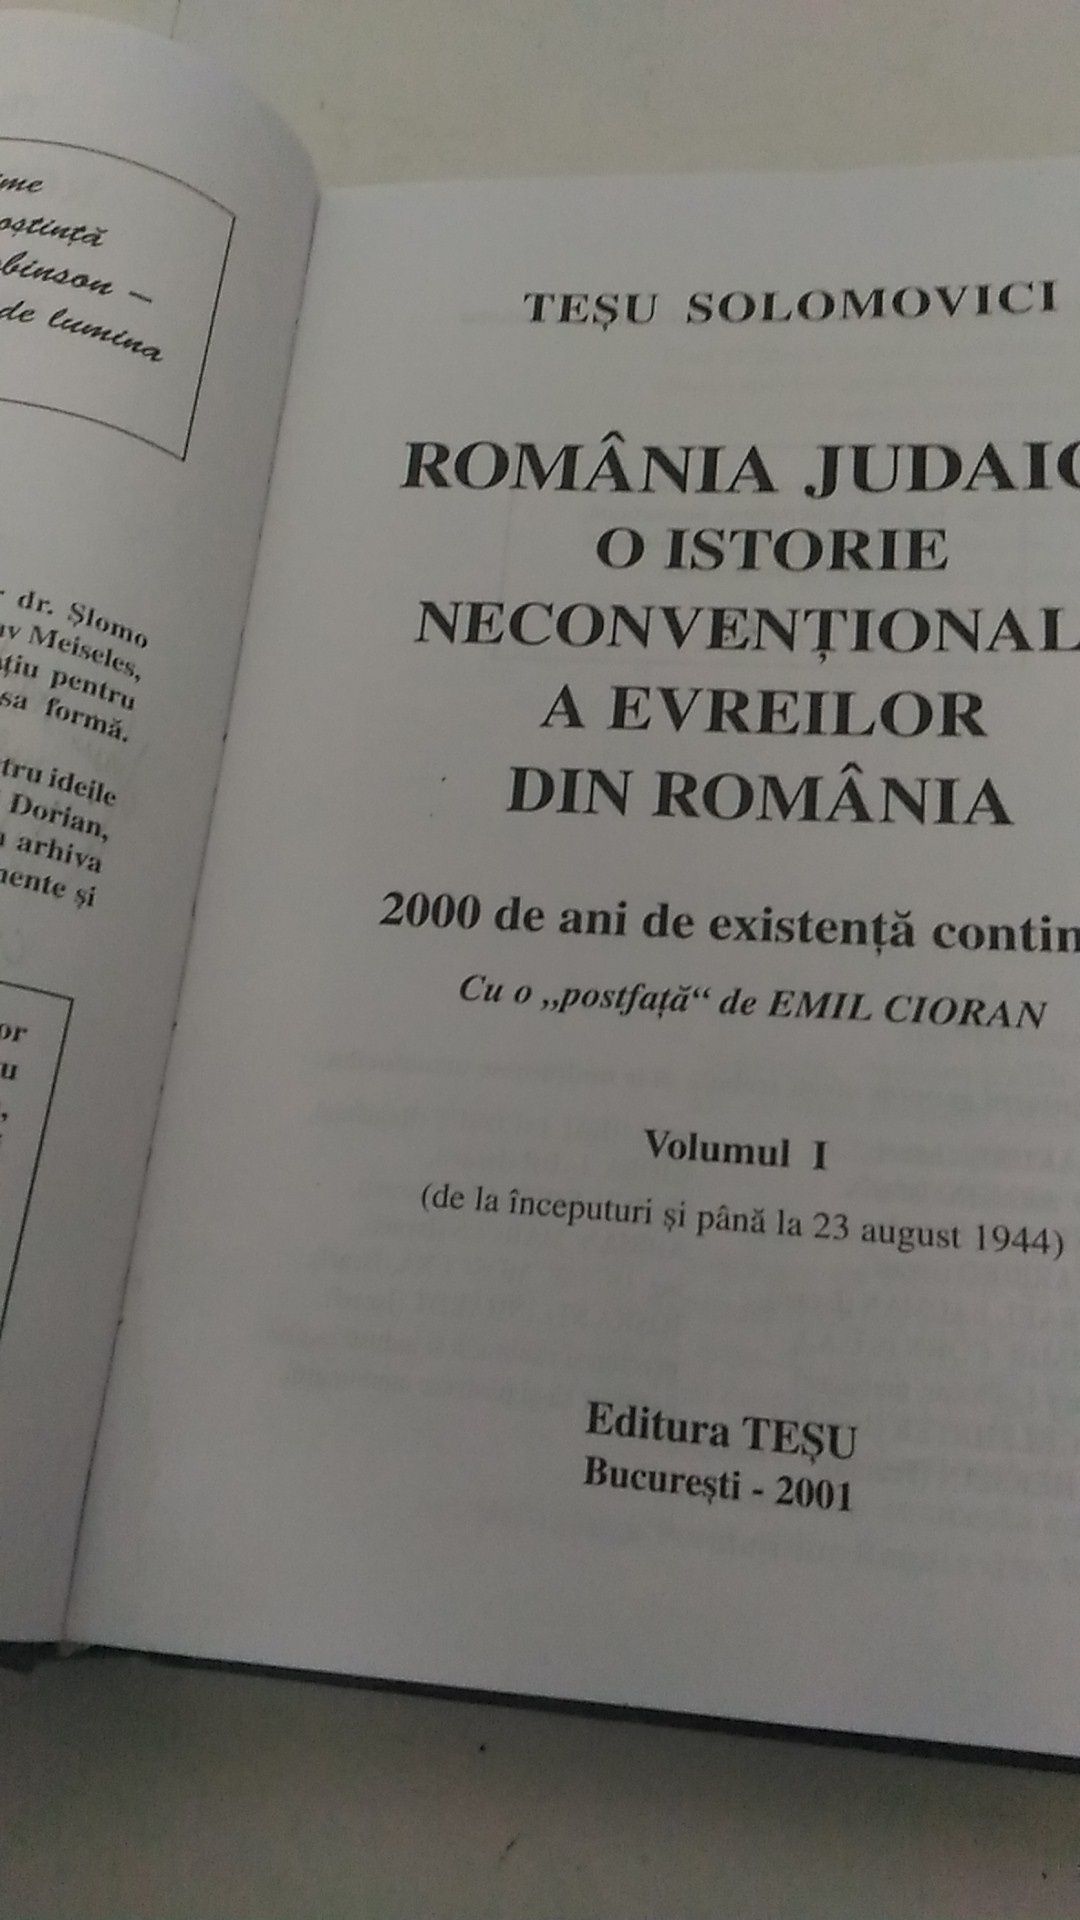 Romania Judaica Tesu Solomovici. Cu dedicatie si semnatura